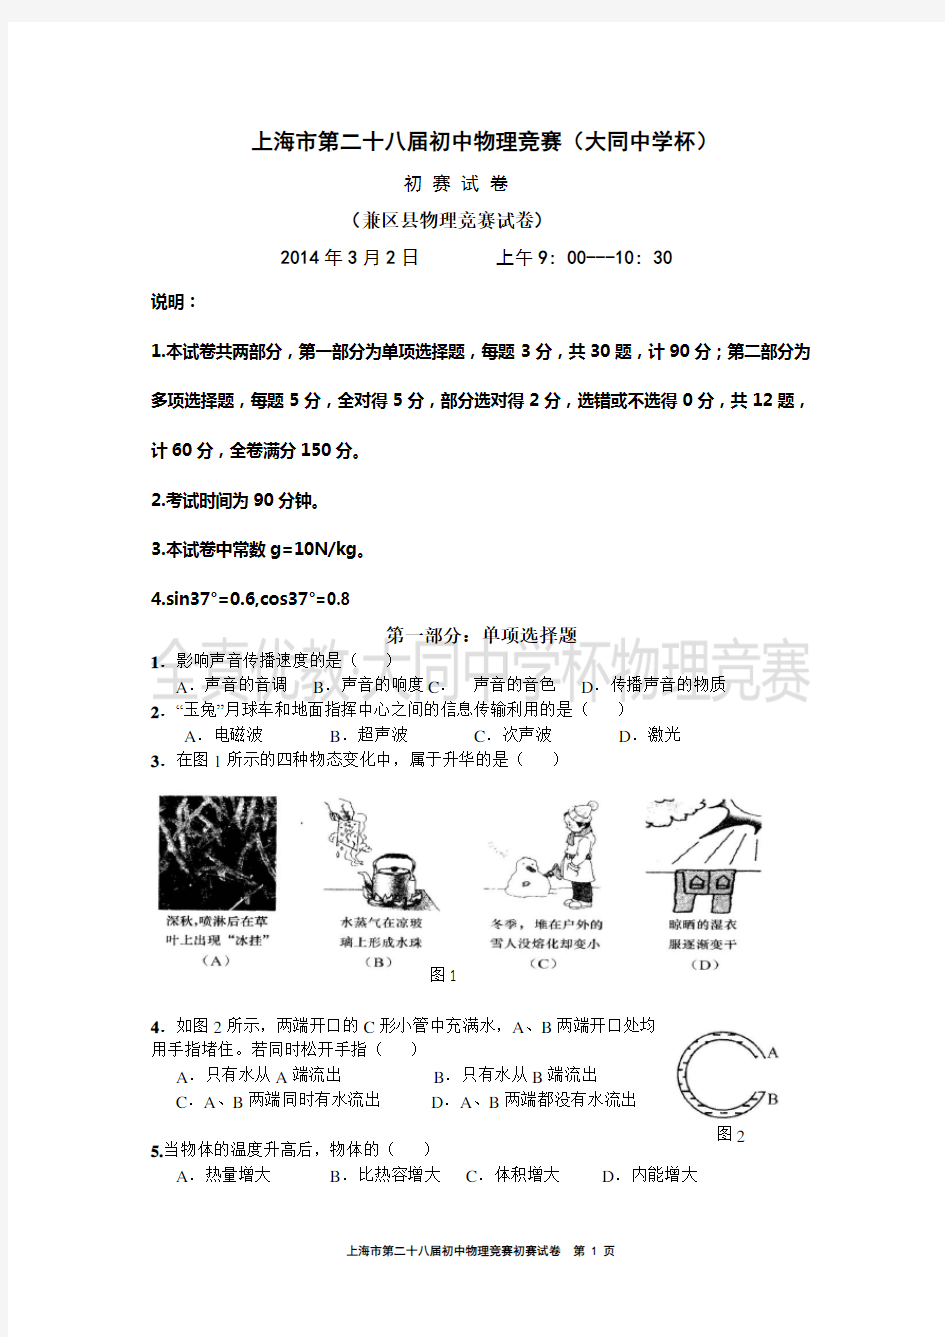 2014学年第28届上海大同杯物理竞赛初赛试卷(含答案)